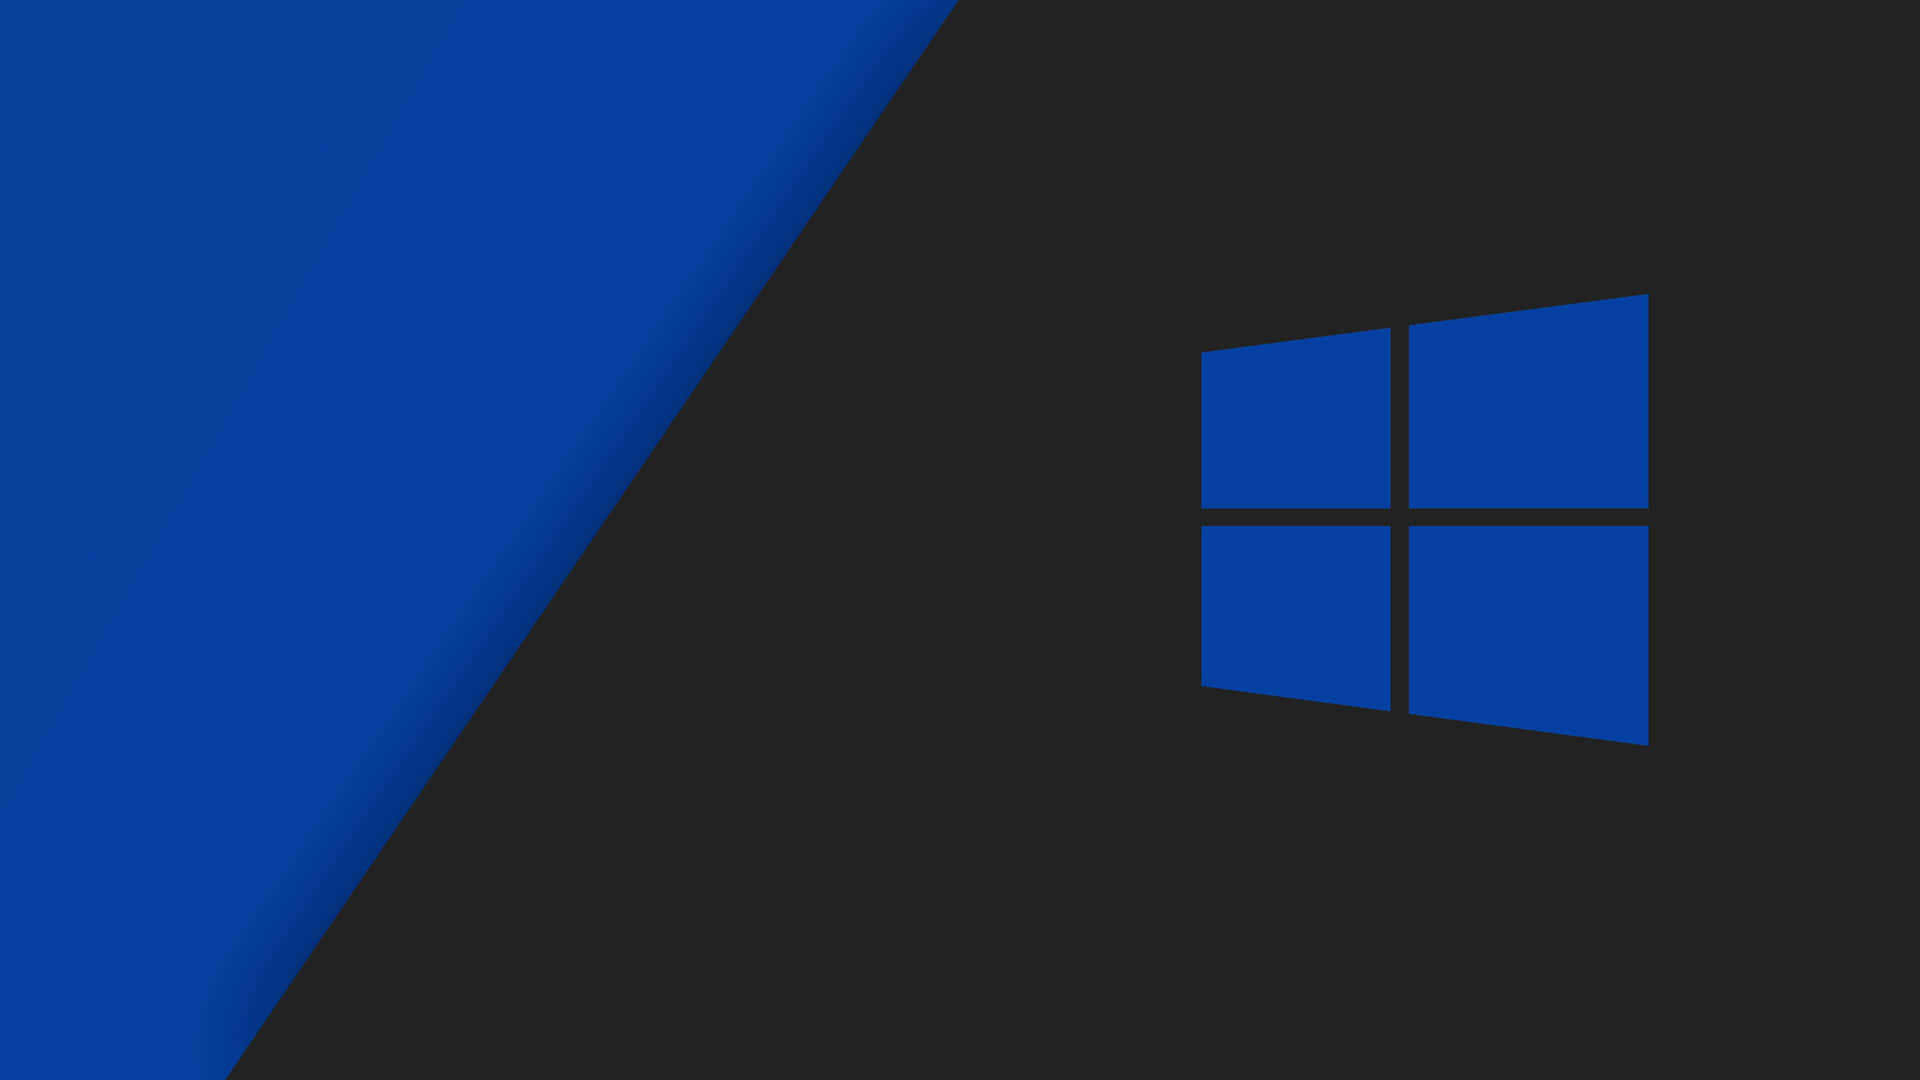 Logoet af Windows 10 med blå og sort baggrund Wallpaper